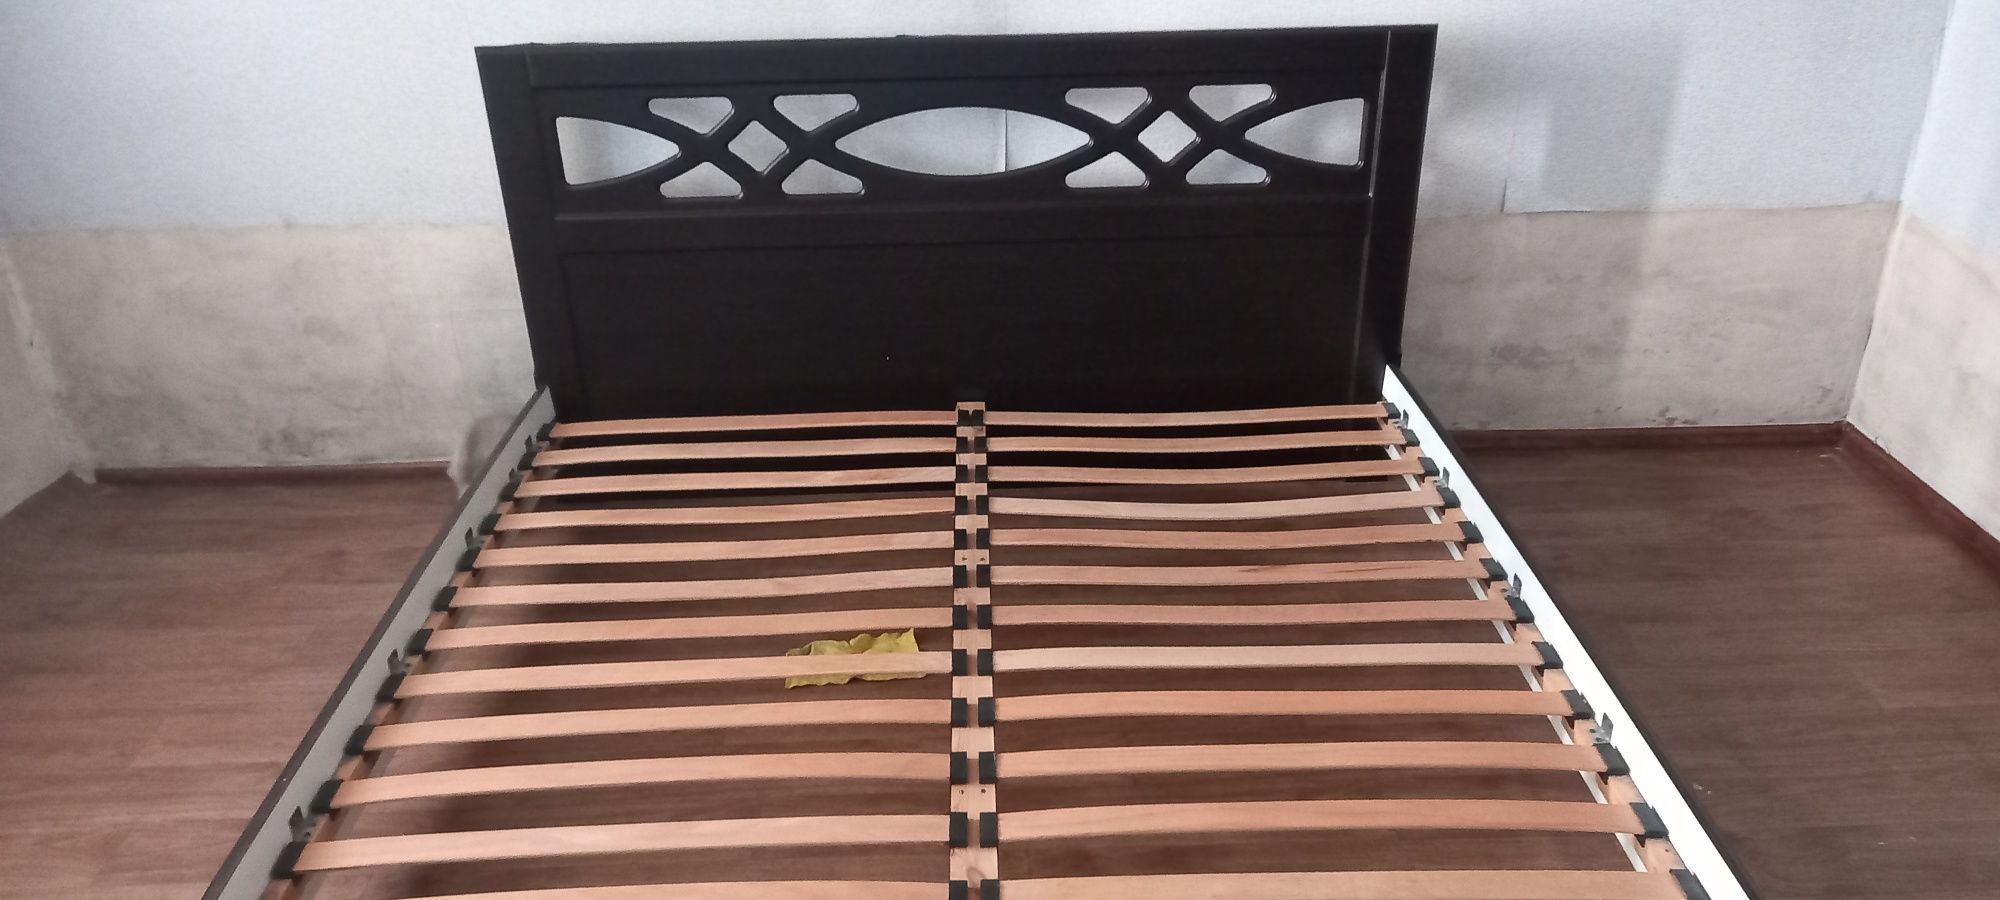 Продам кровать под матрас 180×200, без матраса, только самовывоз